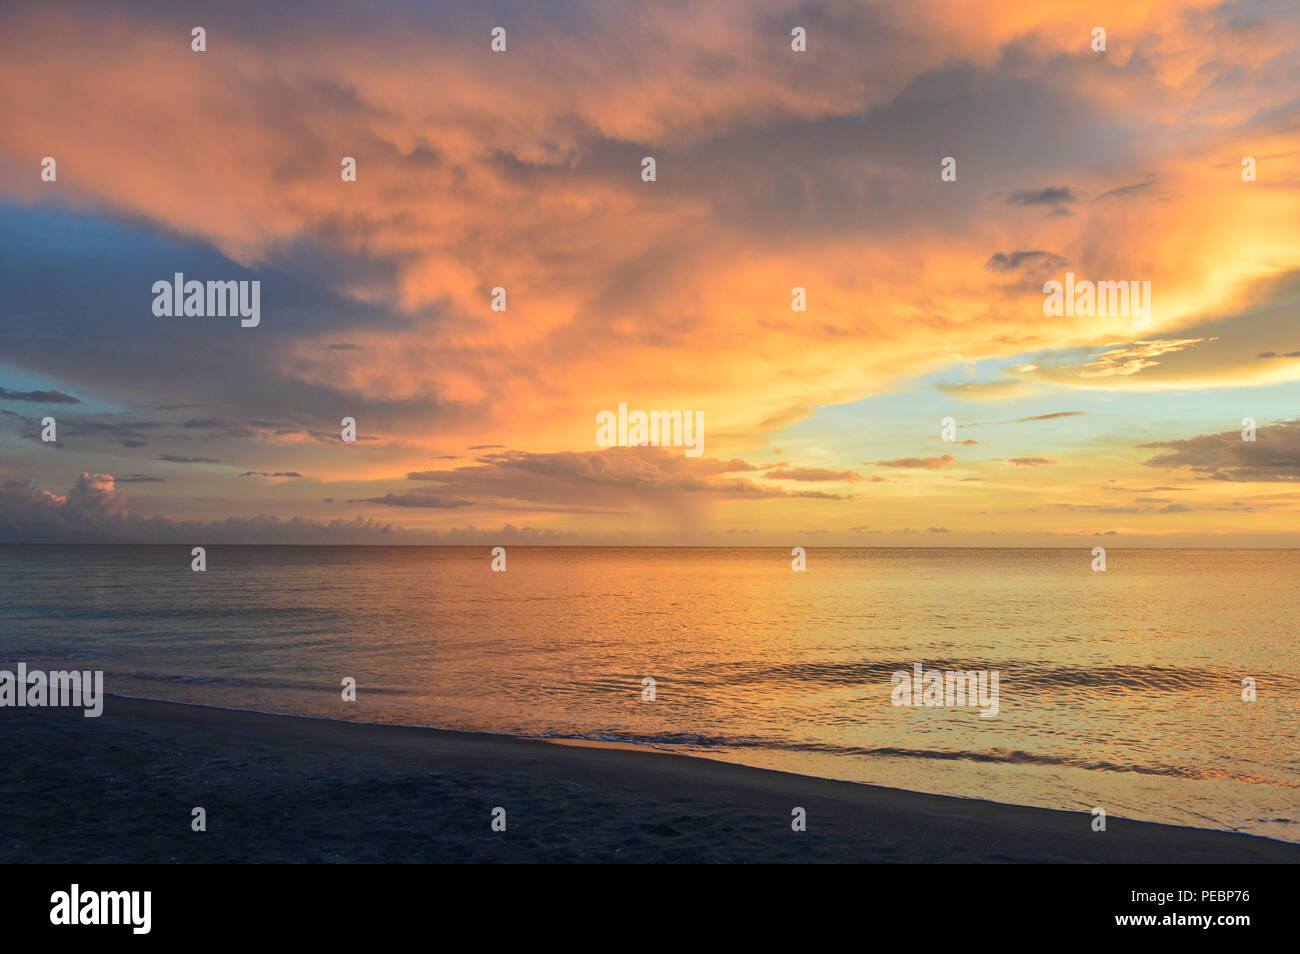 Photographie de paysage crépuscule panoramique de l'île de Sable côtières tropicales Coucher du Soleil calme paysage tranquille eau mer Surf Sérénité Golfe du Mexique en Floride Sanibel Banque D'Images